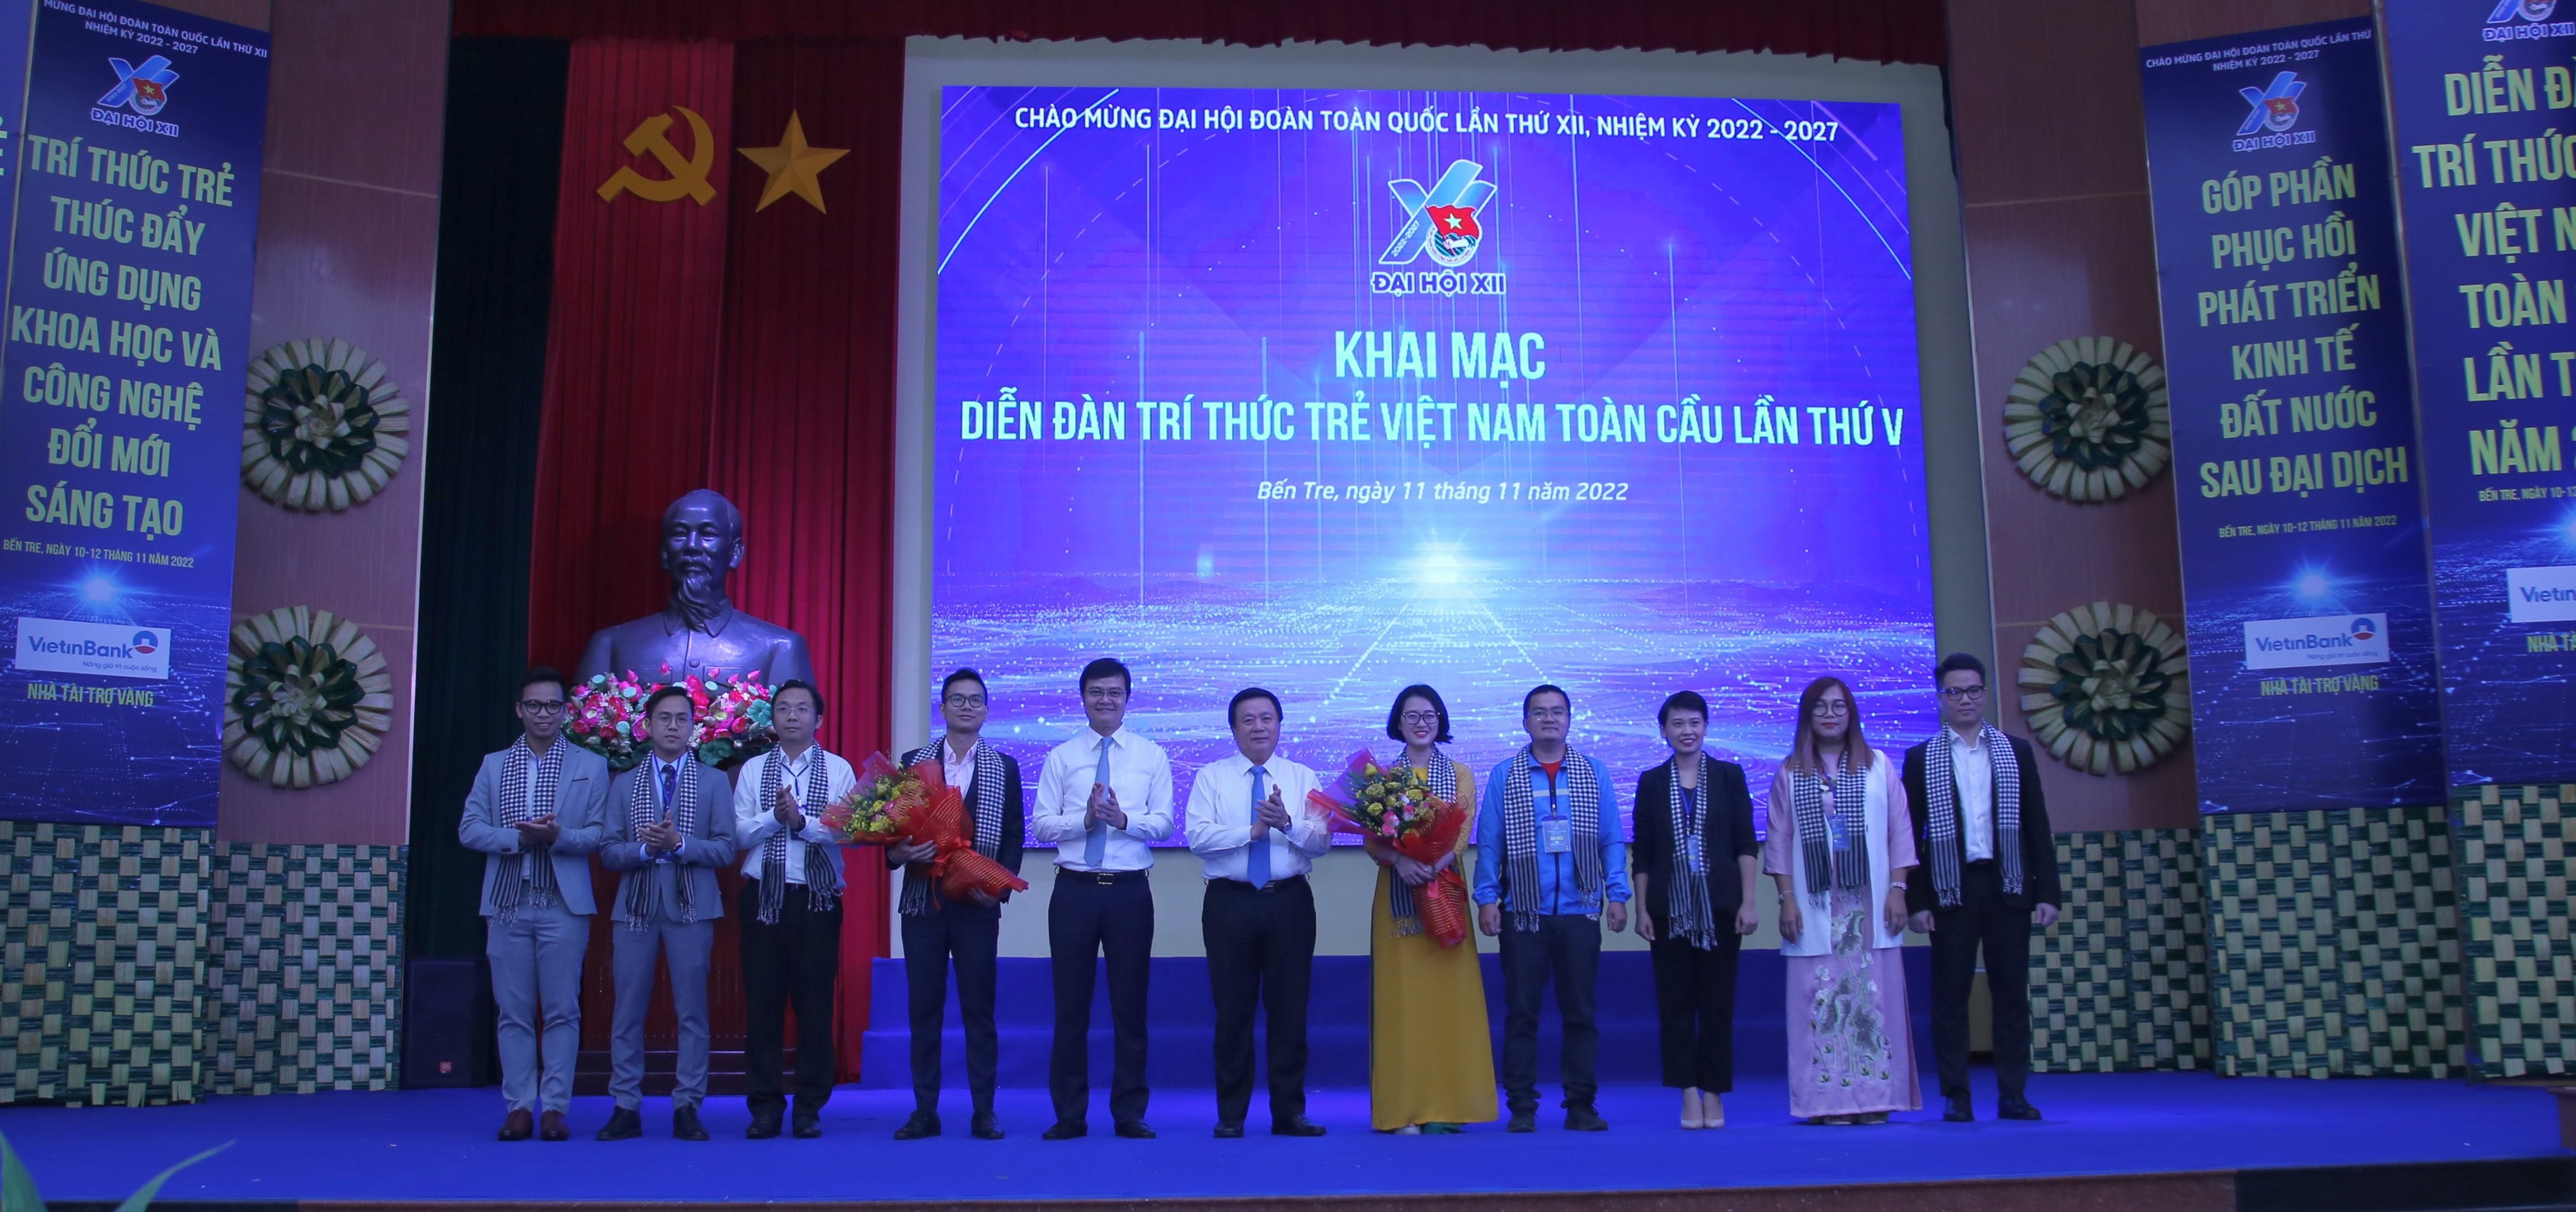 Diễn đàn Trí thức trẻ Việt Nam toàn cầu lần thứ V, năm 2022 được tổ chức tại Hội trường UBND tỉnh Bến Tre